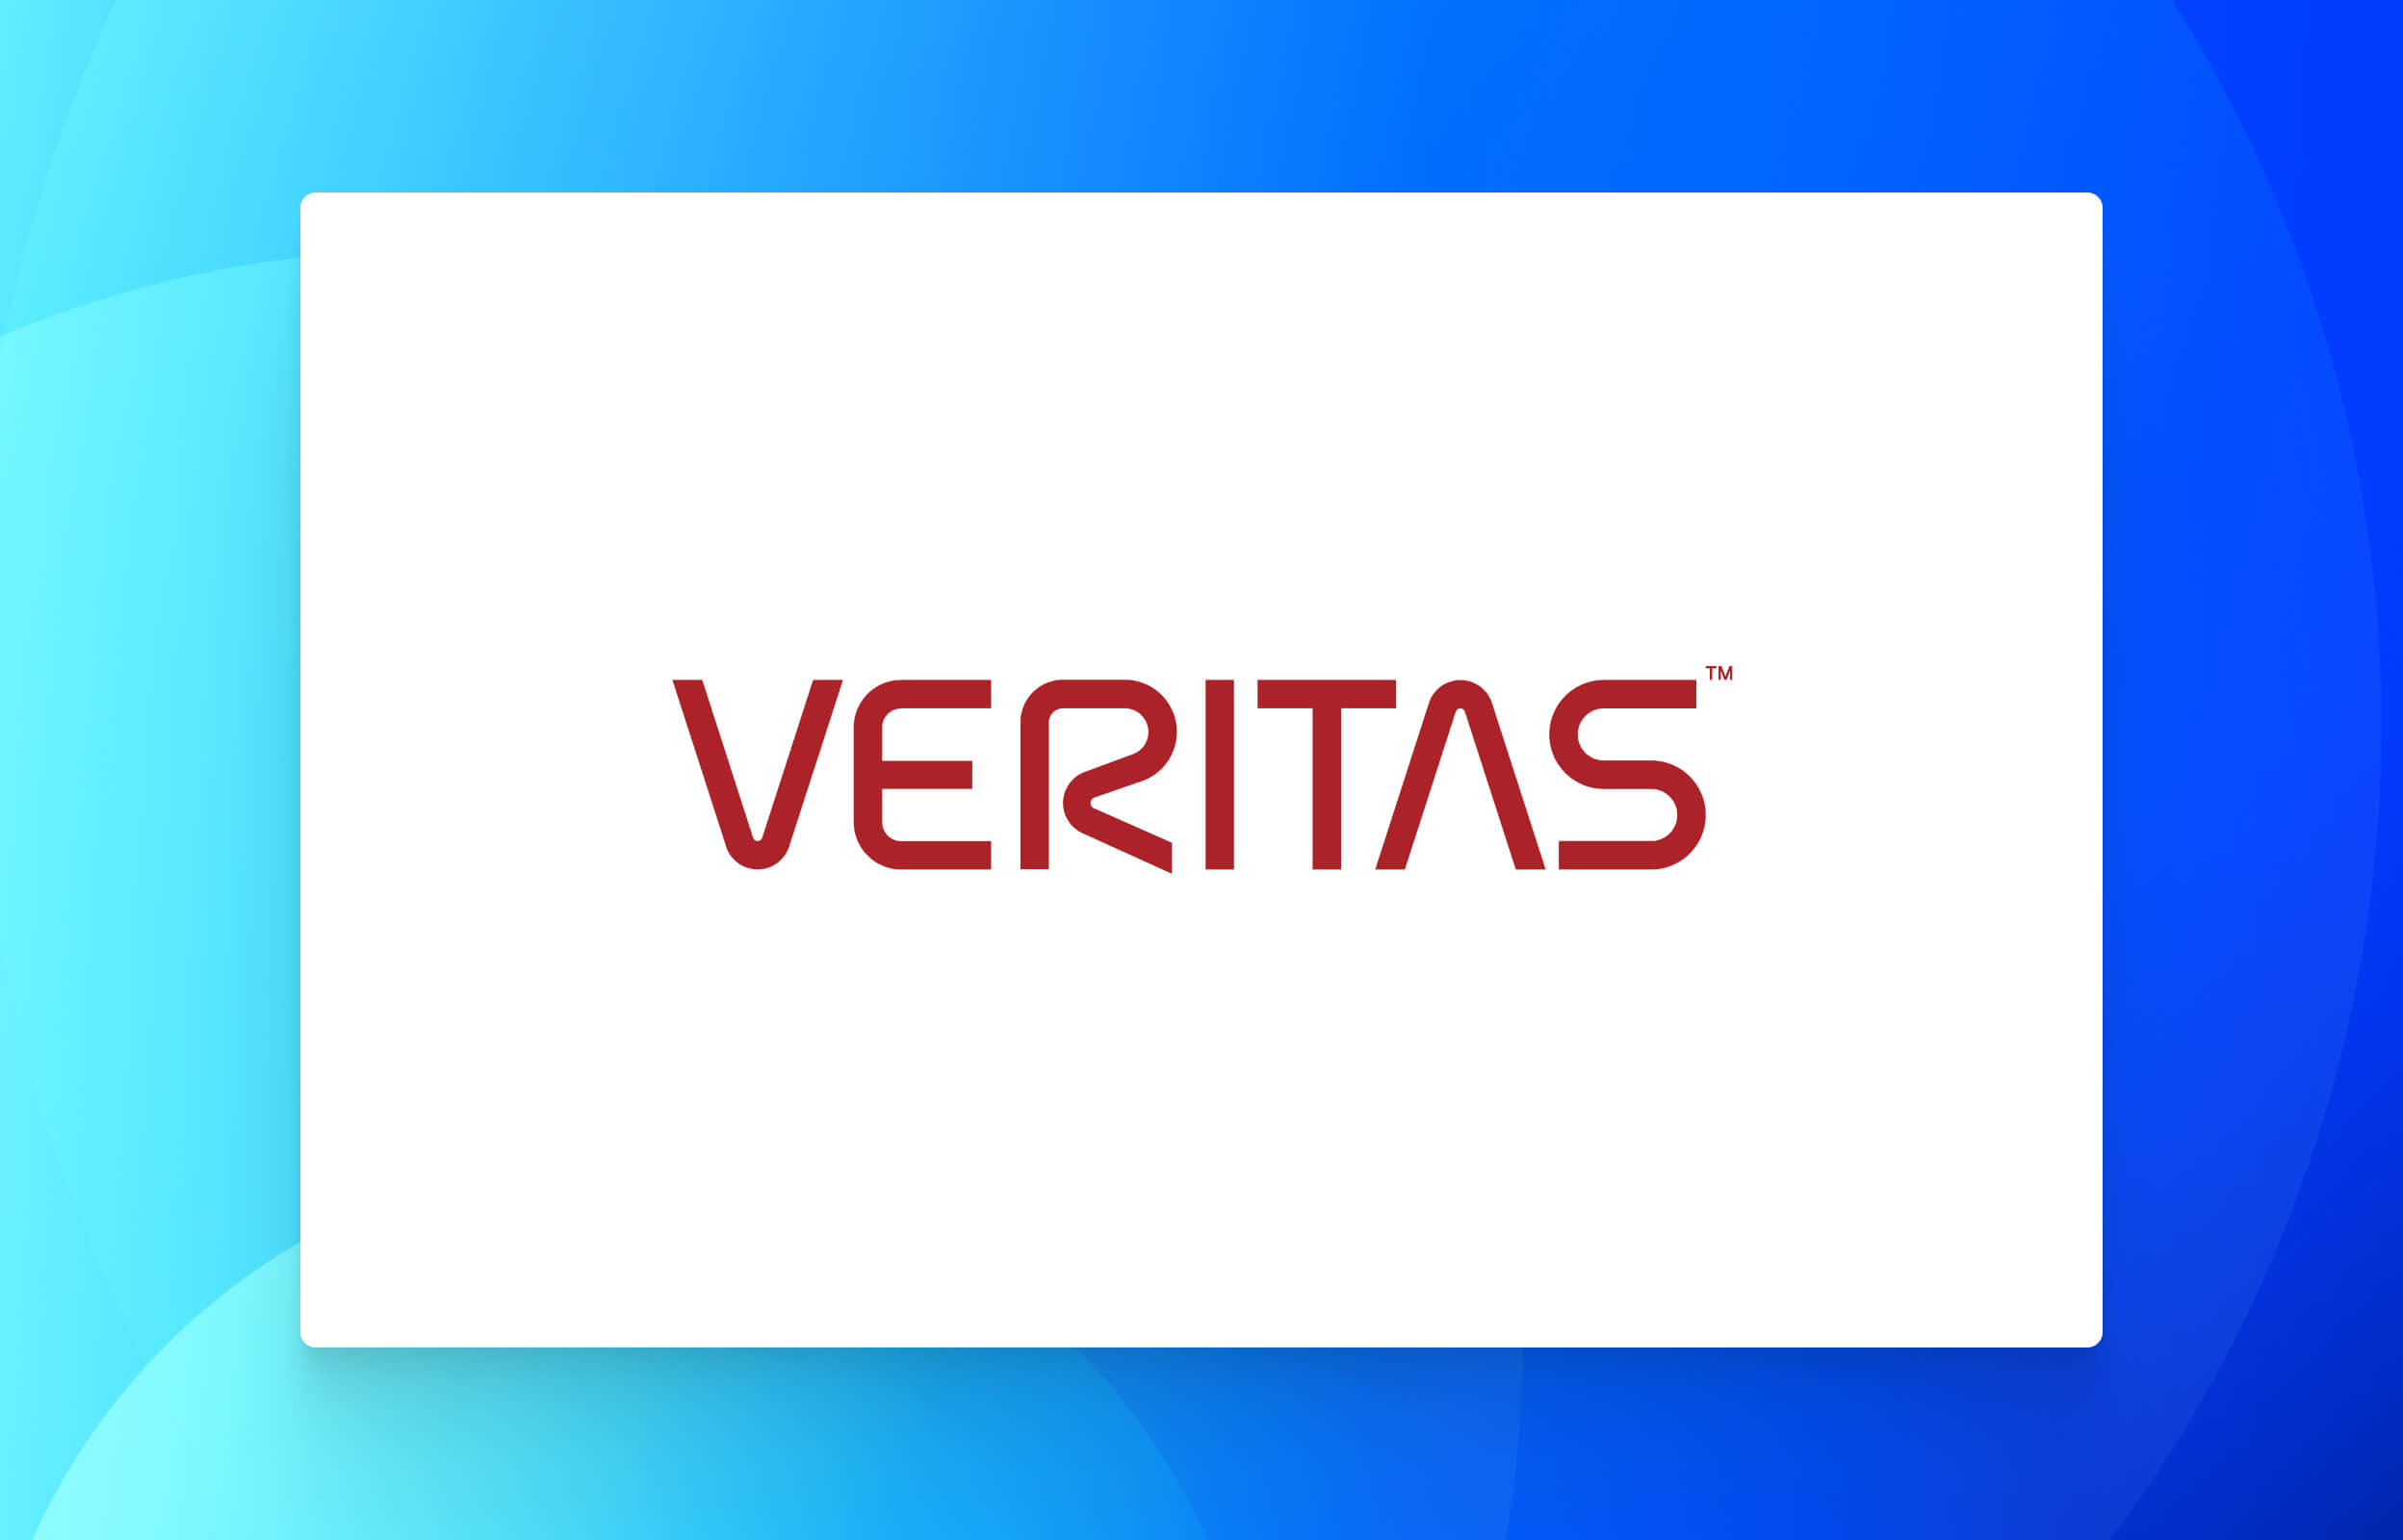 Veritas logo with Datacom cloud artwork